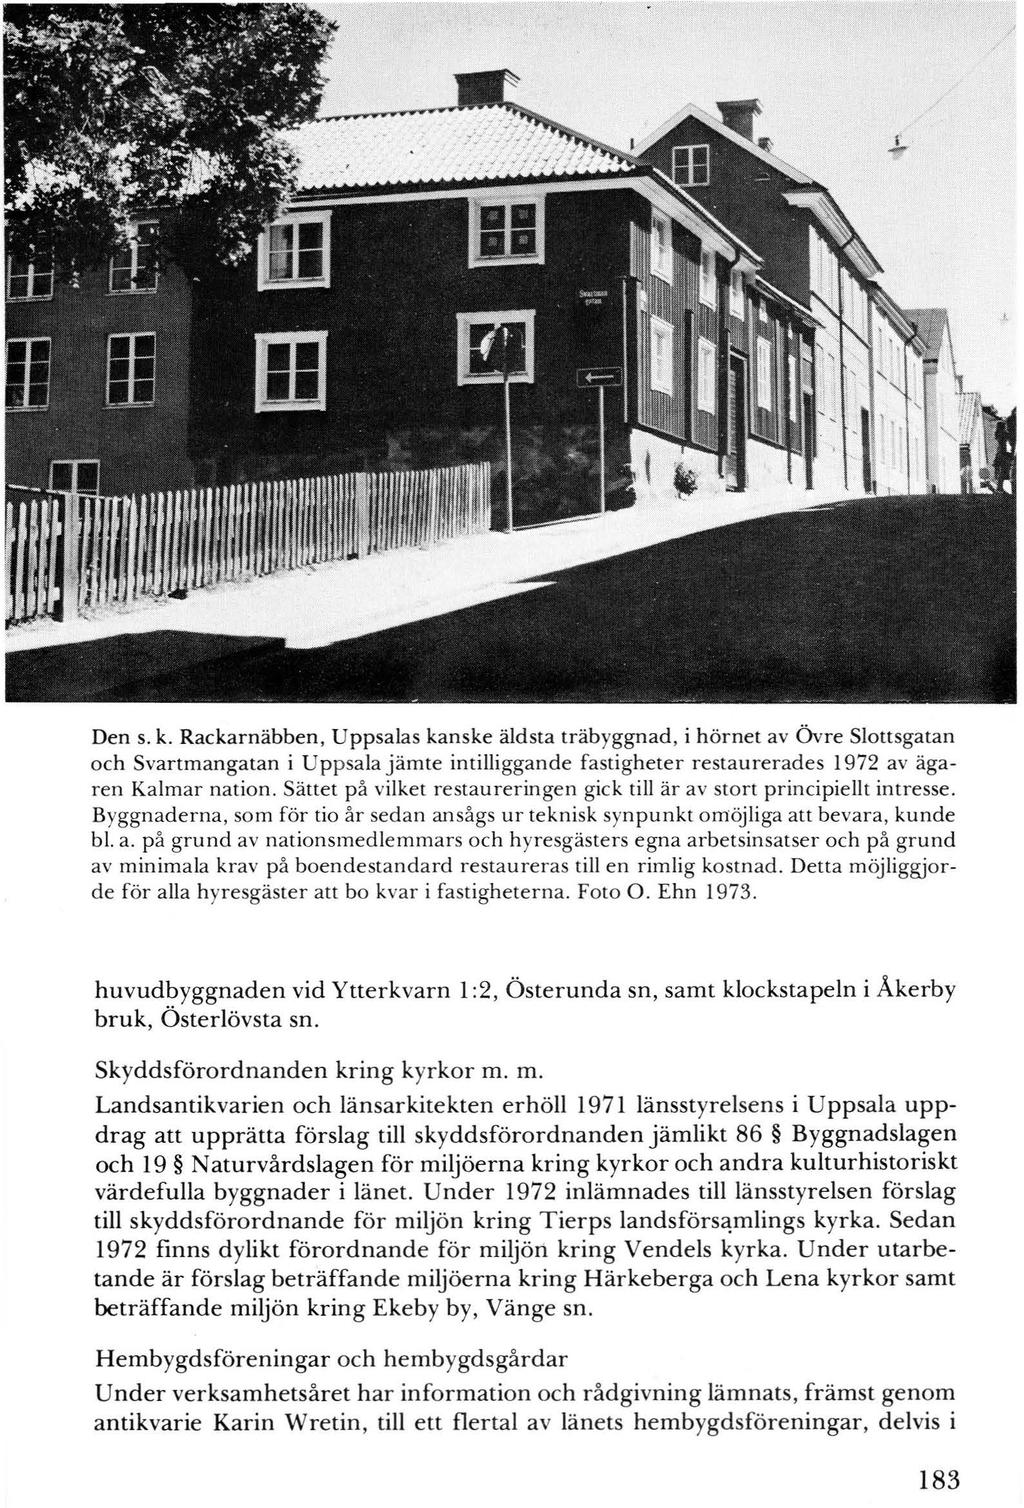 Den s. k. Rackarnäbben, Uppsalas kanske äldsta träbyggnad, i hörnet av övre Slottsgatan och Svartmangatan i Uppsala jämte intilliggande fastigheter restaurerades 1972 av ägaren Kalmar nation.